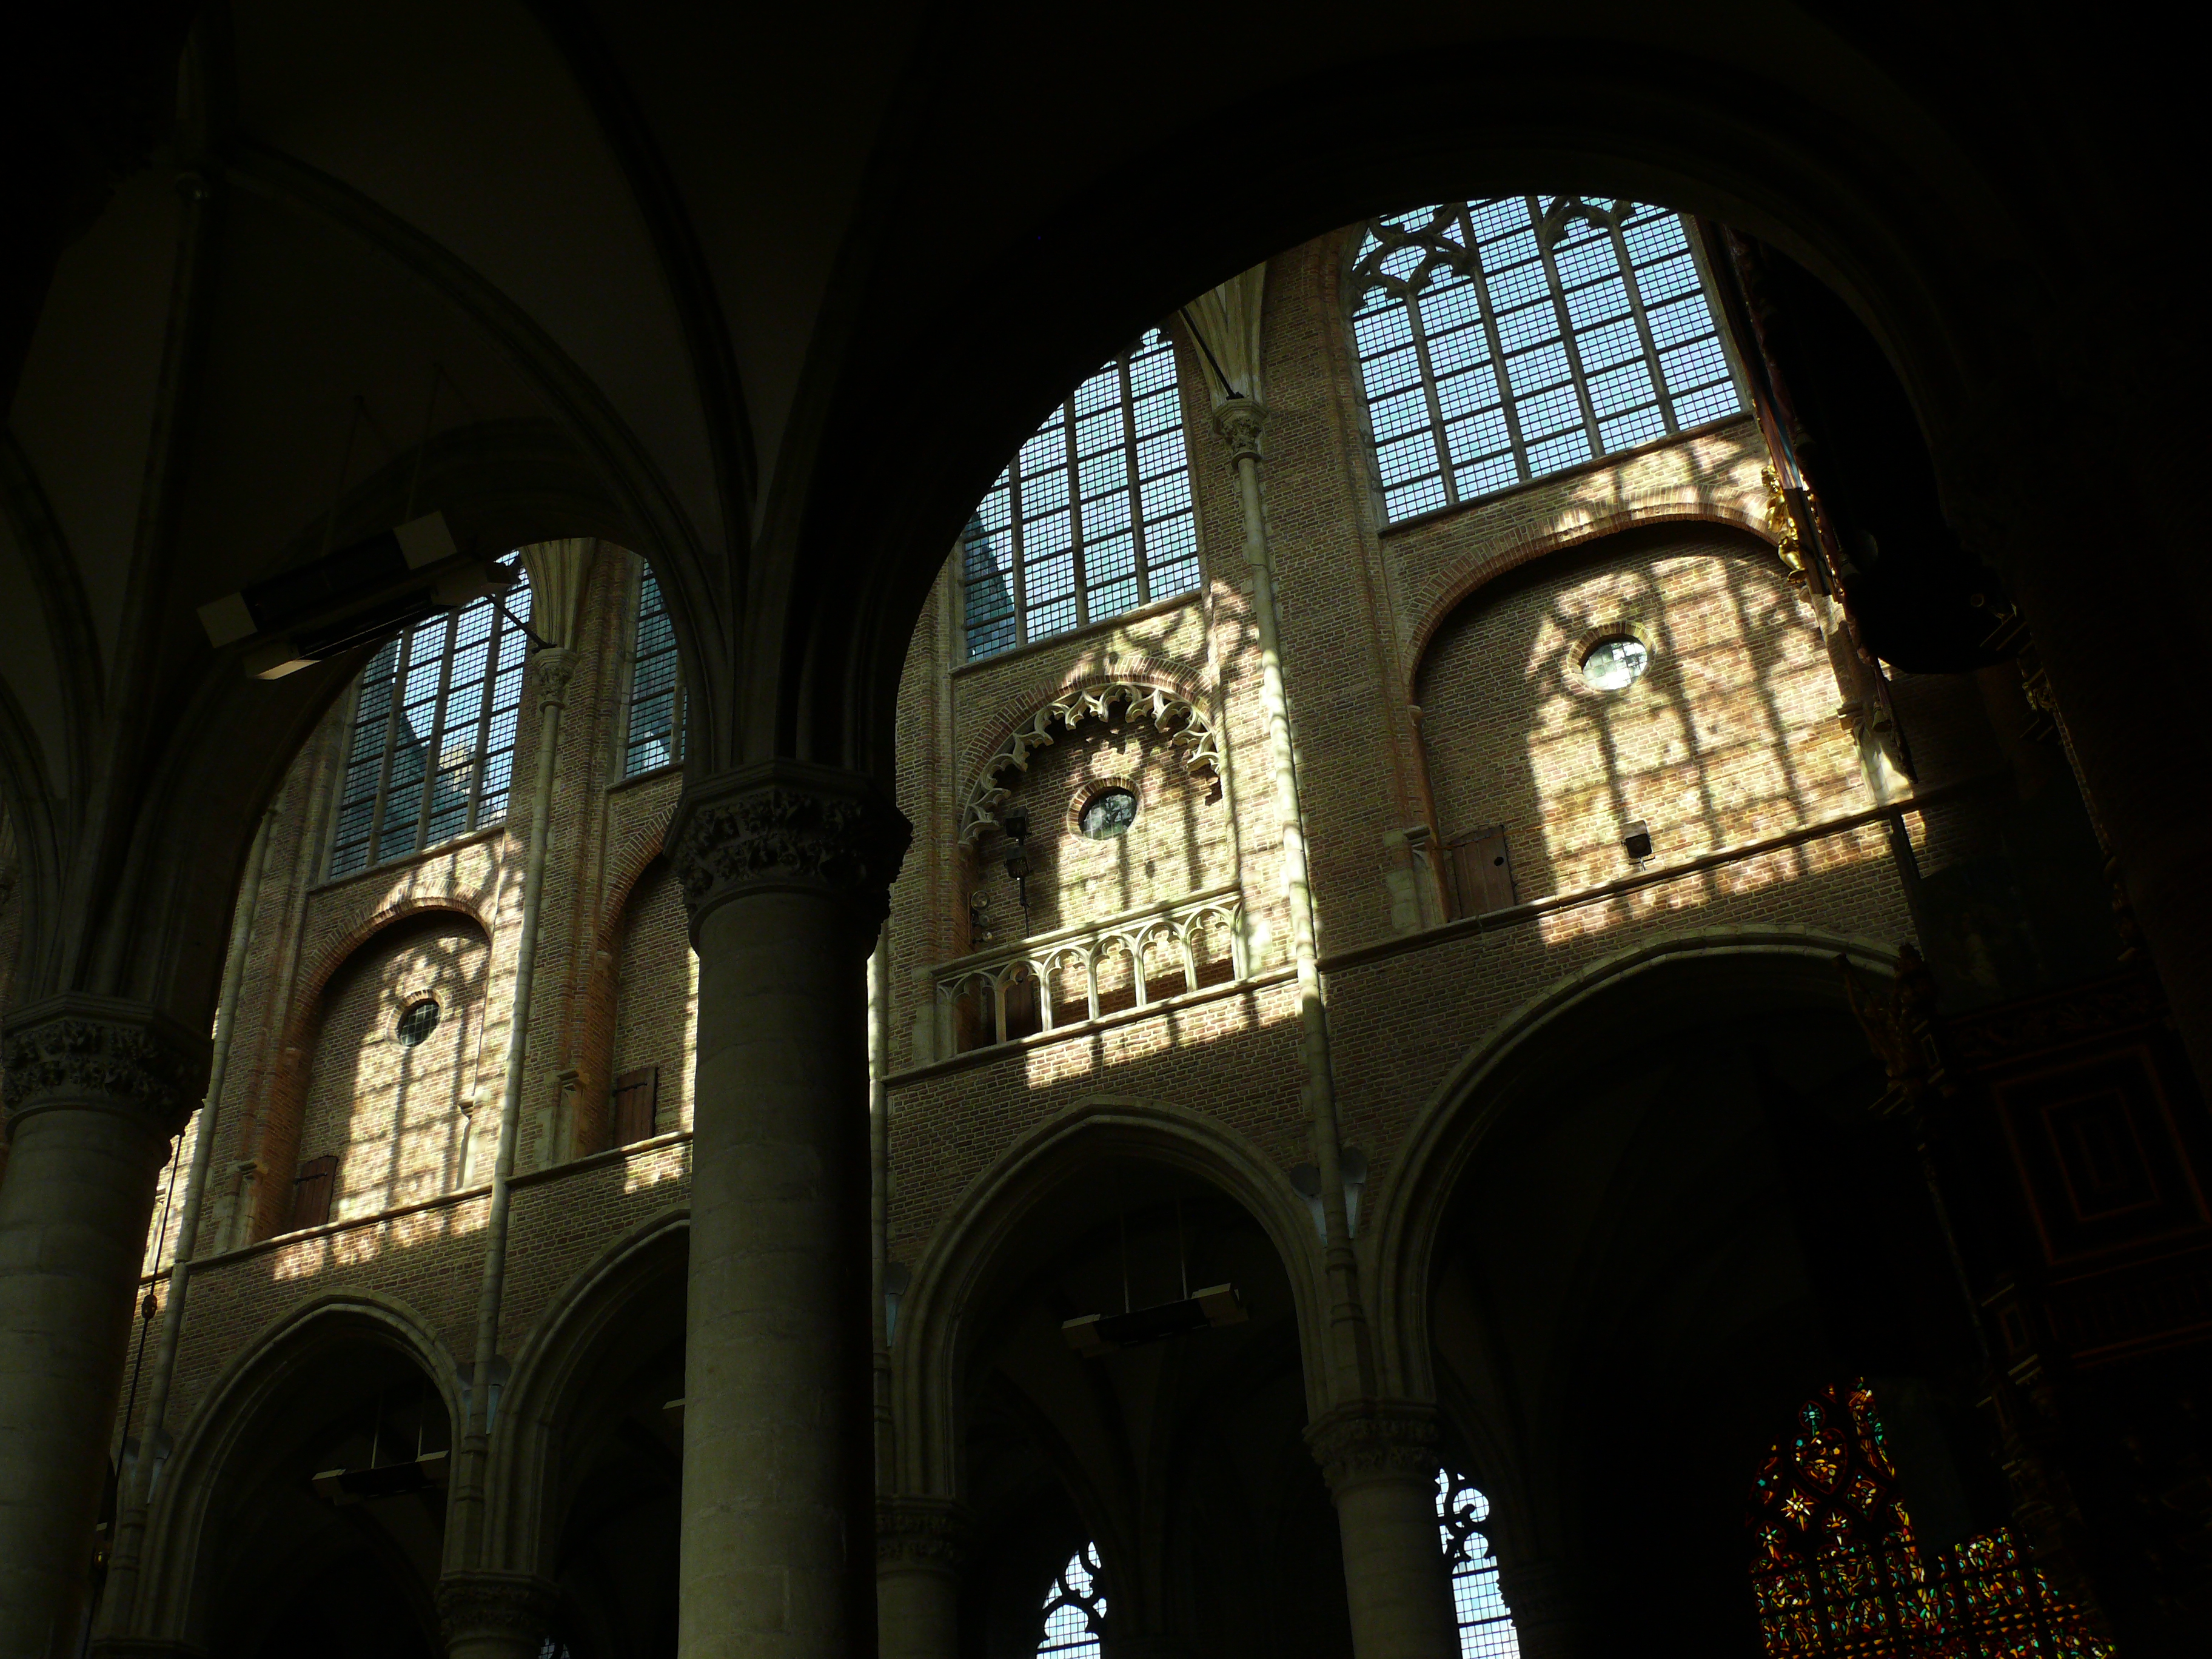 Interieur van de Grote Kerk te Goes, 2010.